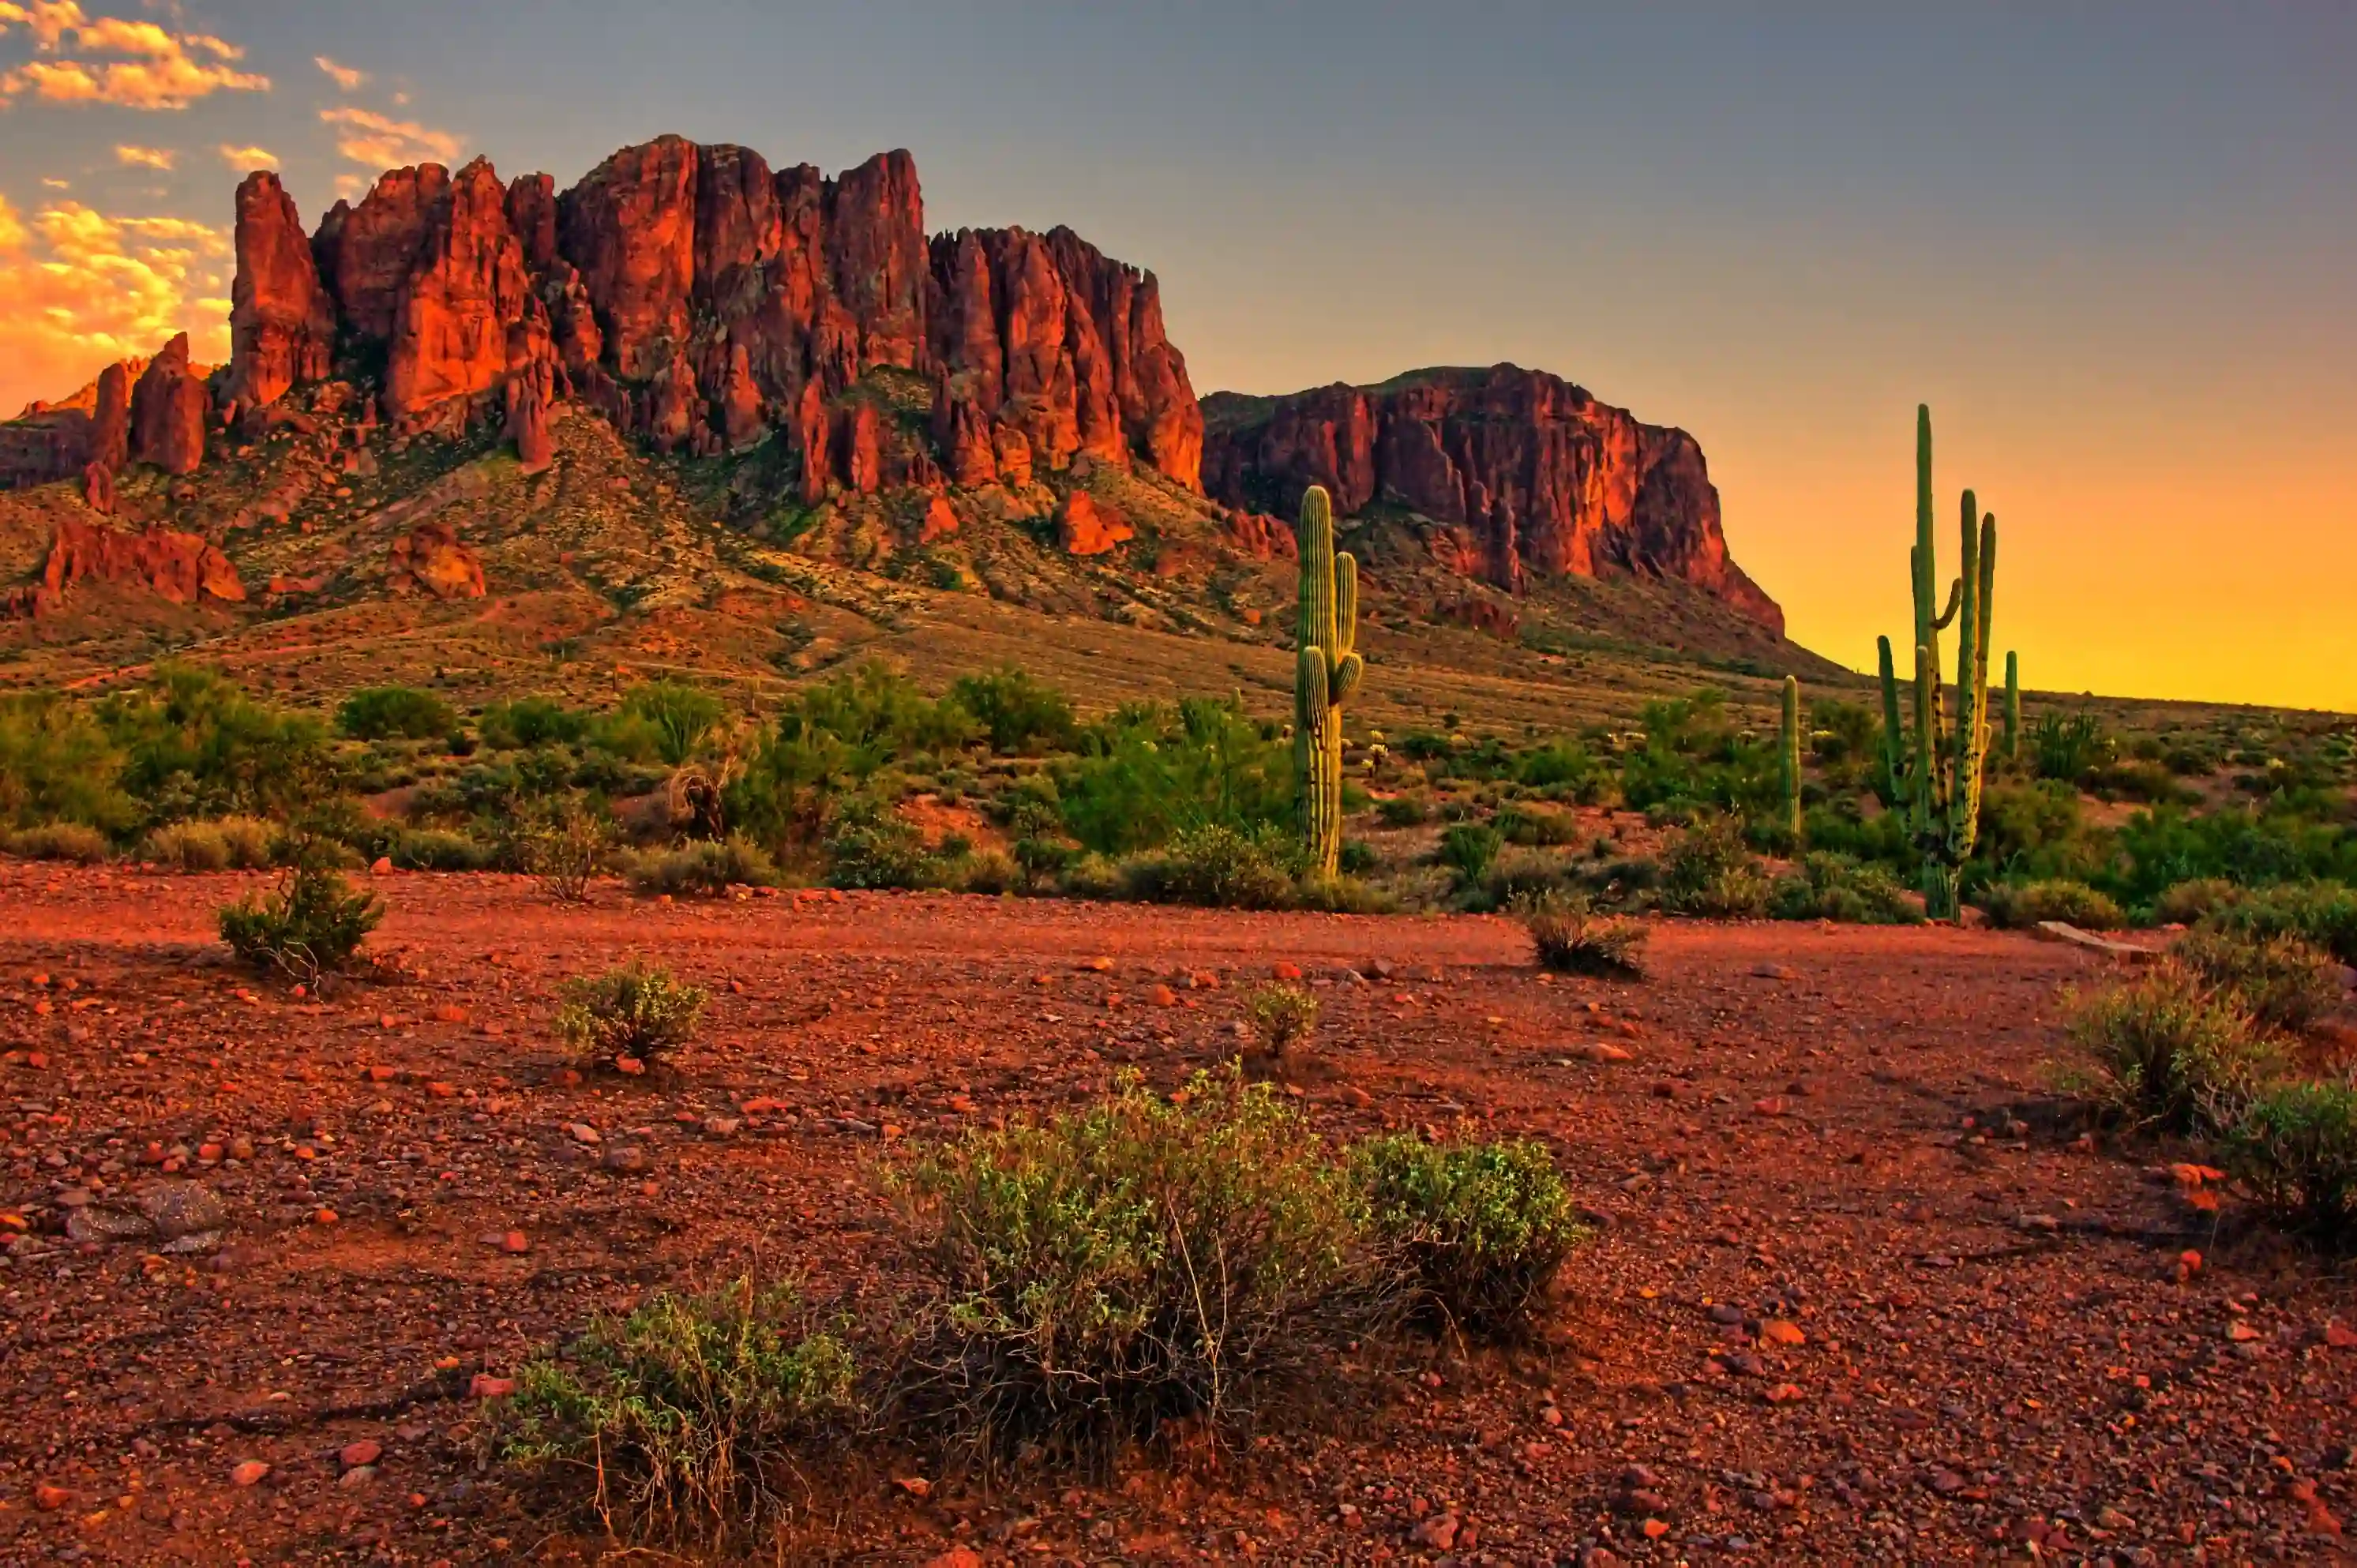 desert sunset with mountain near phoenix arizona